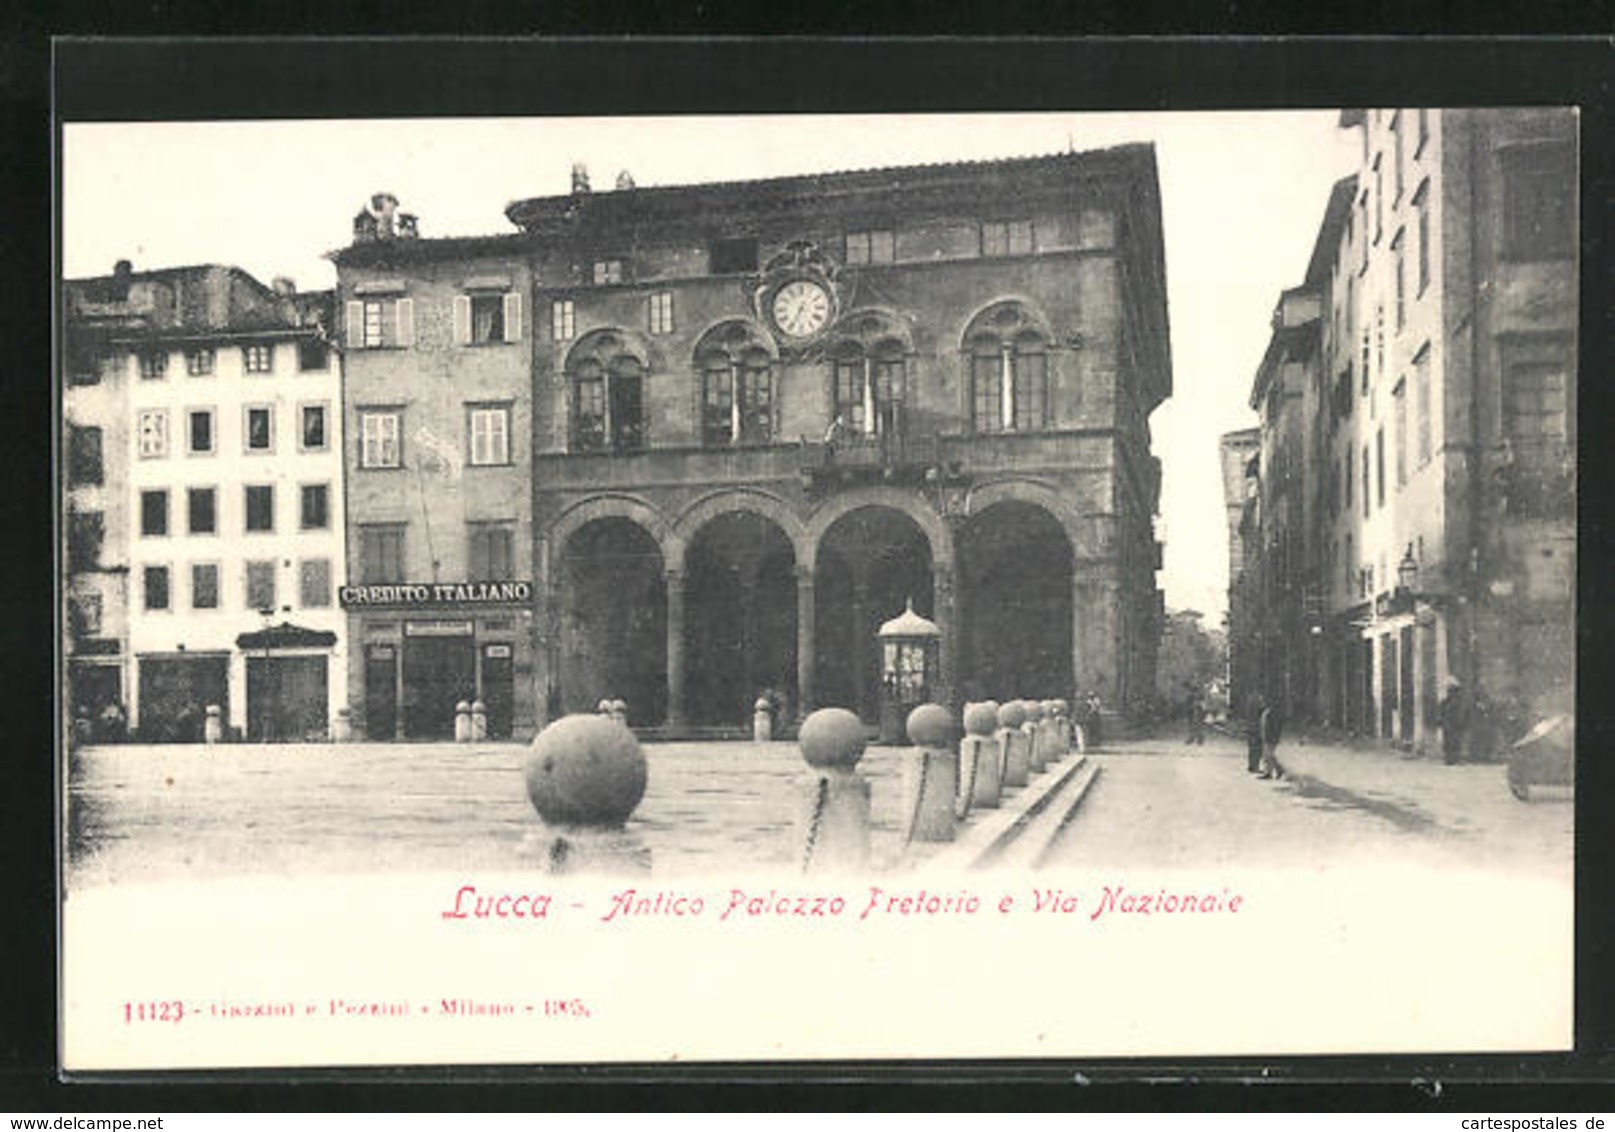 Cartolina Lucca, Antico Palazzo Pretorio E Via Nazionale - Lucca